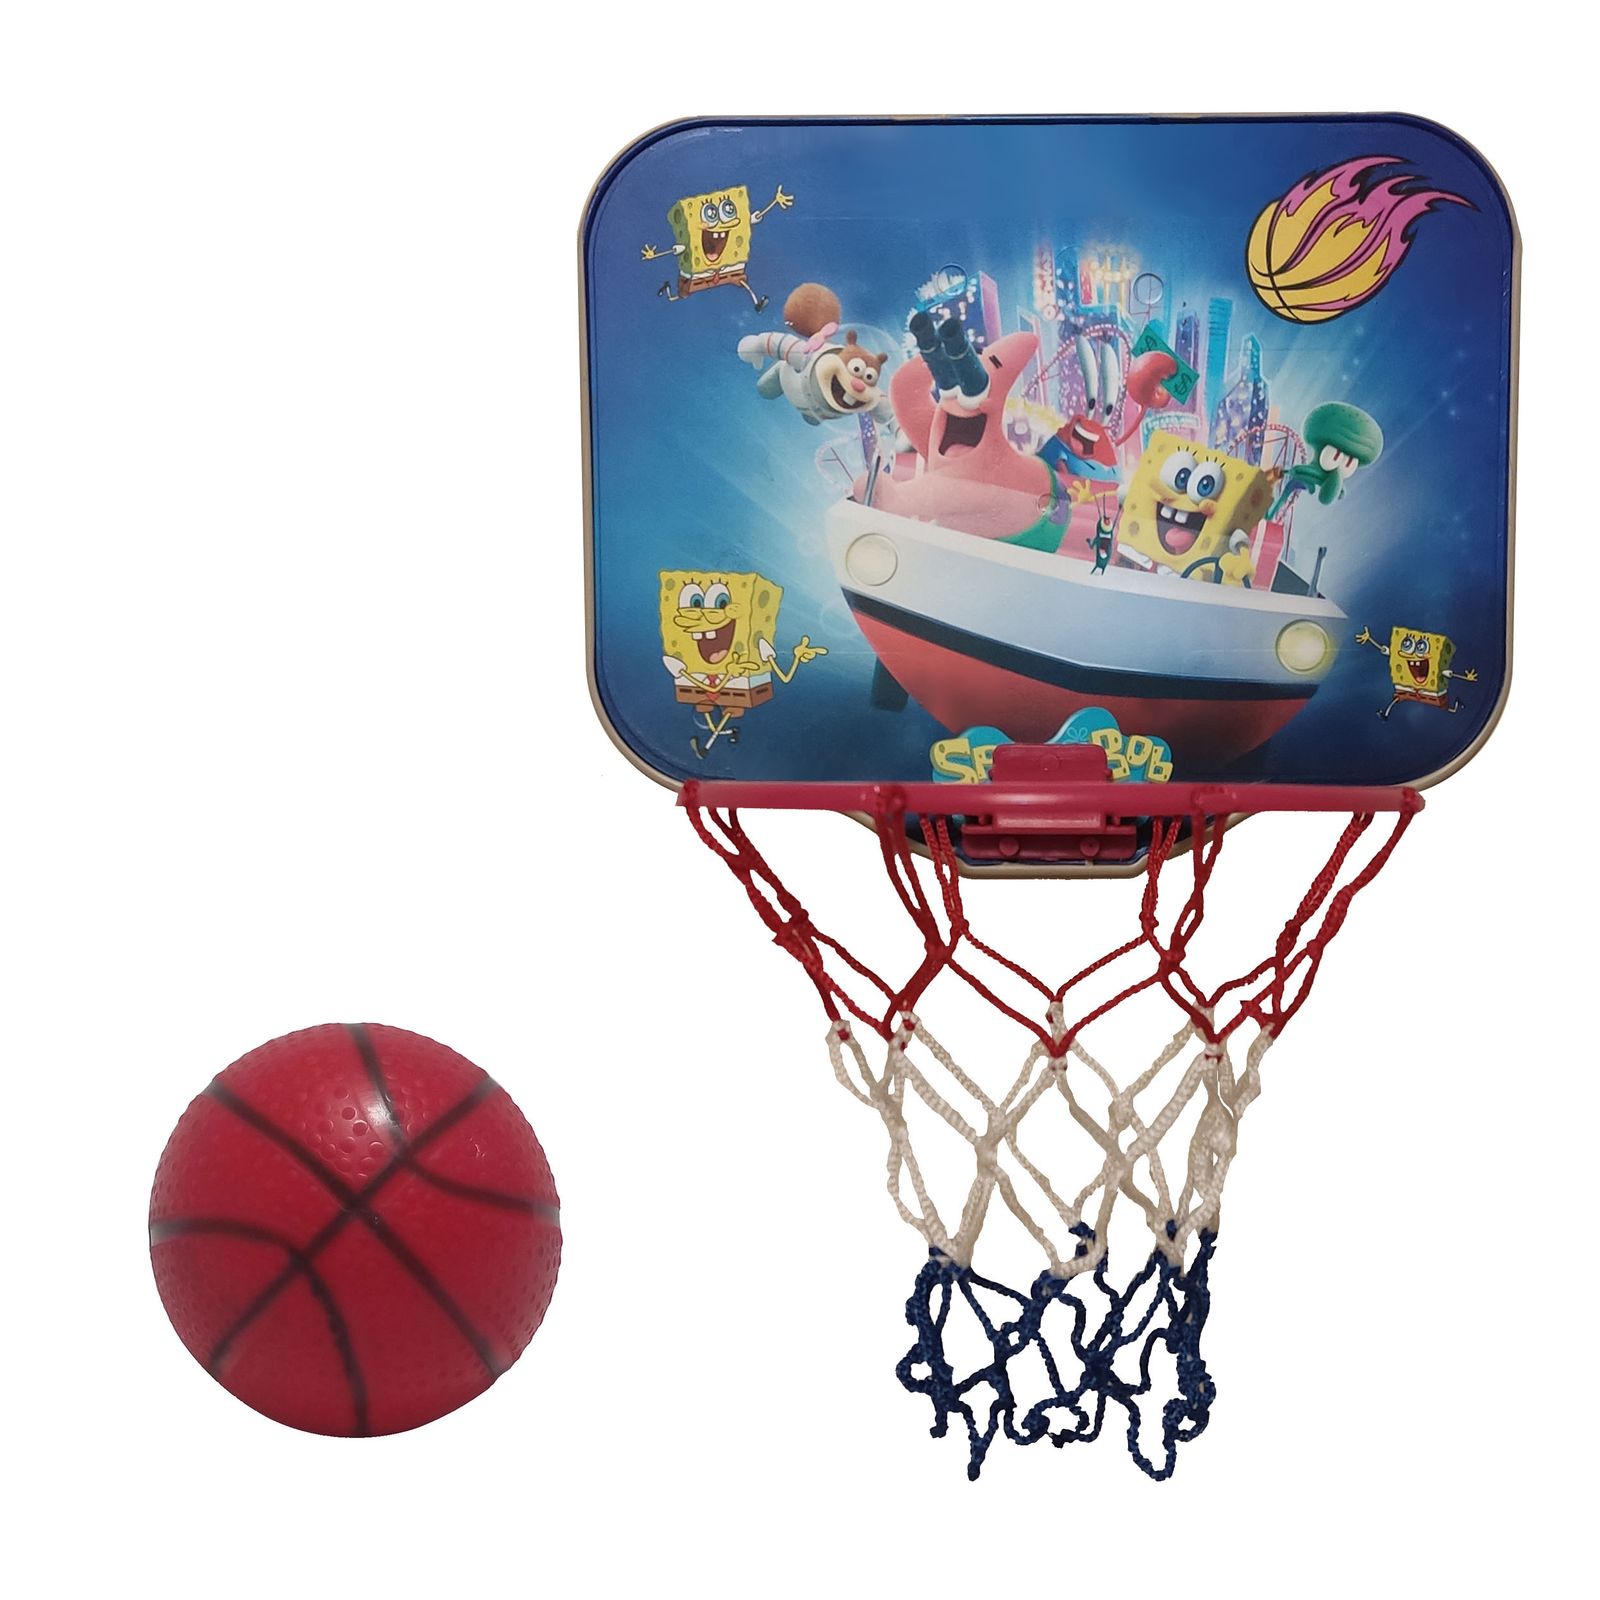 اسباب بازی بسکتبال مدل باب اسفنجی و پاتریک M -  - 1